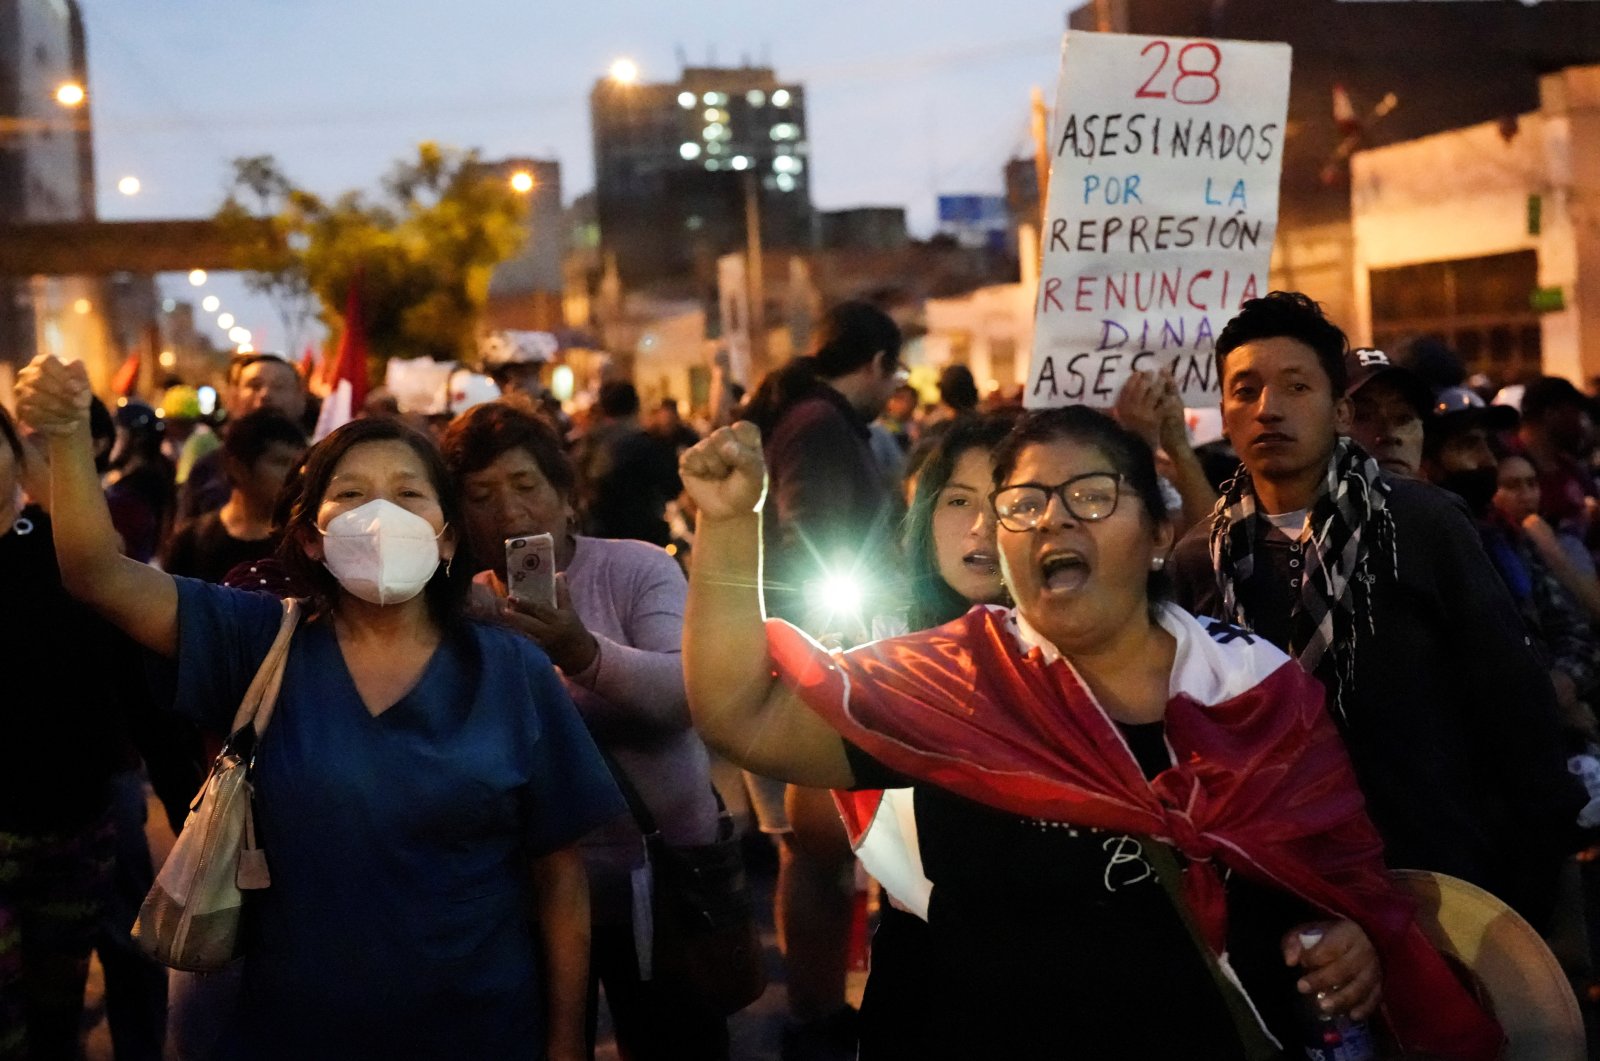 Orang asing ‘separatis’ yang harus disalahkan atas kekerasan protes Peru: Chavez